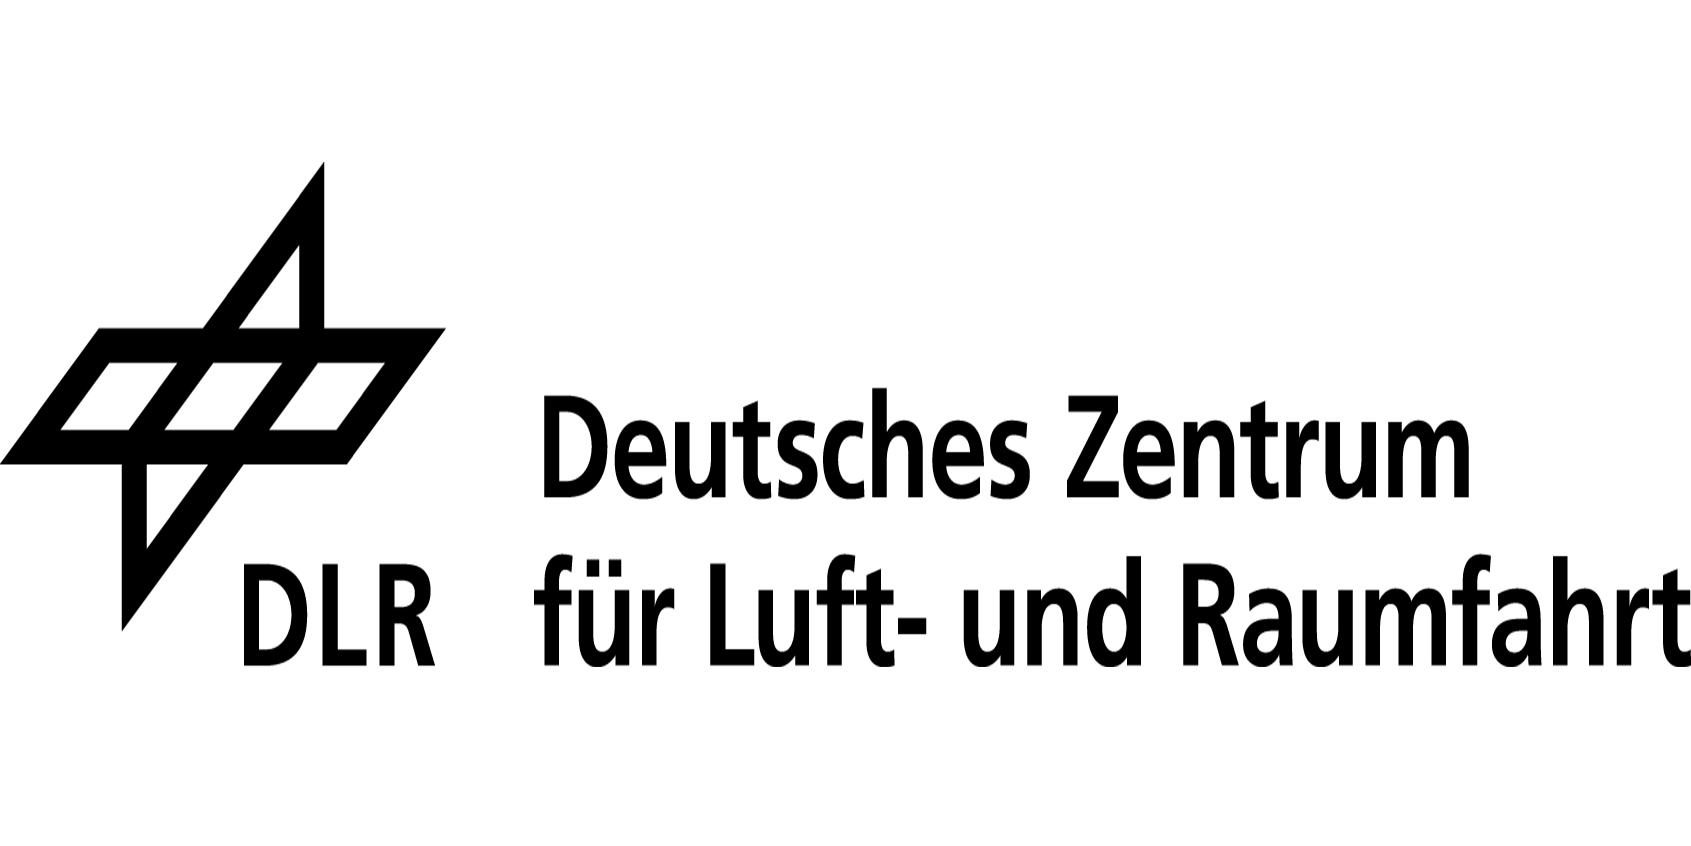 Deutsches Zentrum für Luft- und Raumfahrt e.V. (DLR)